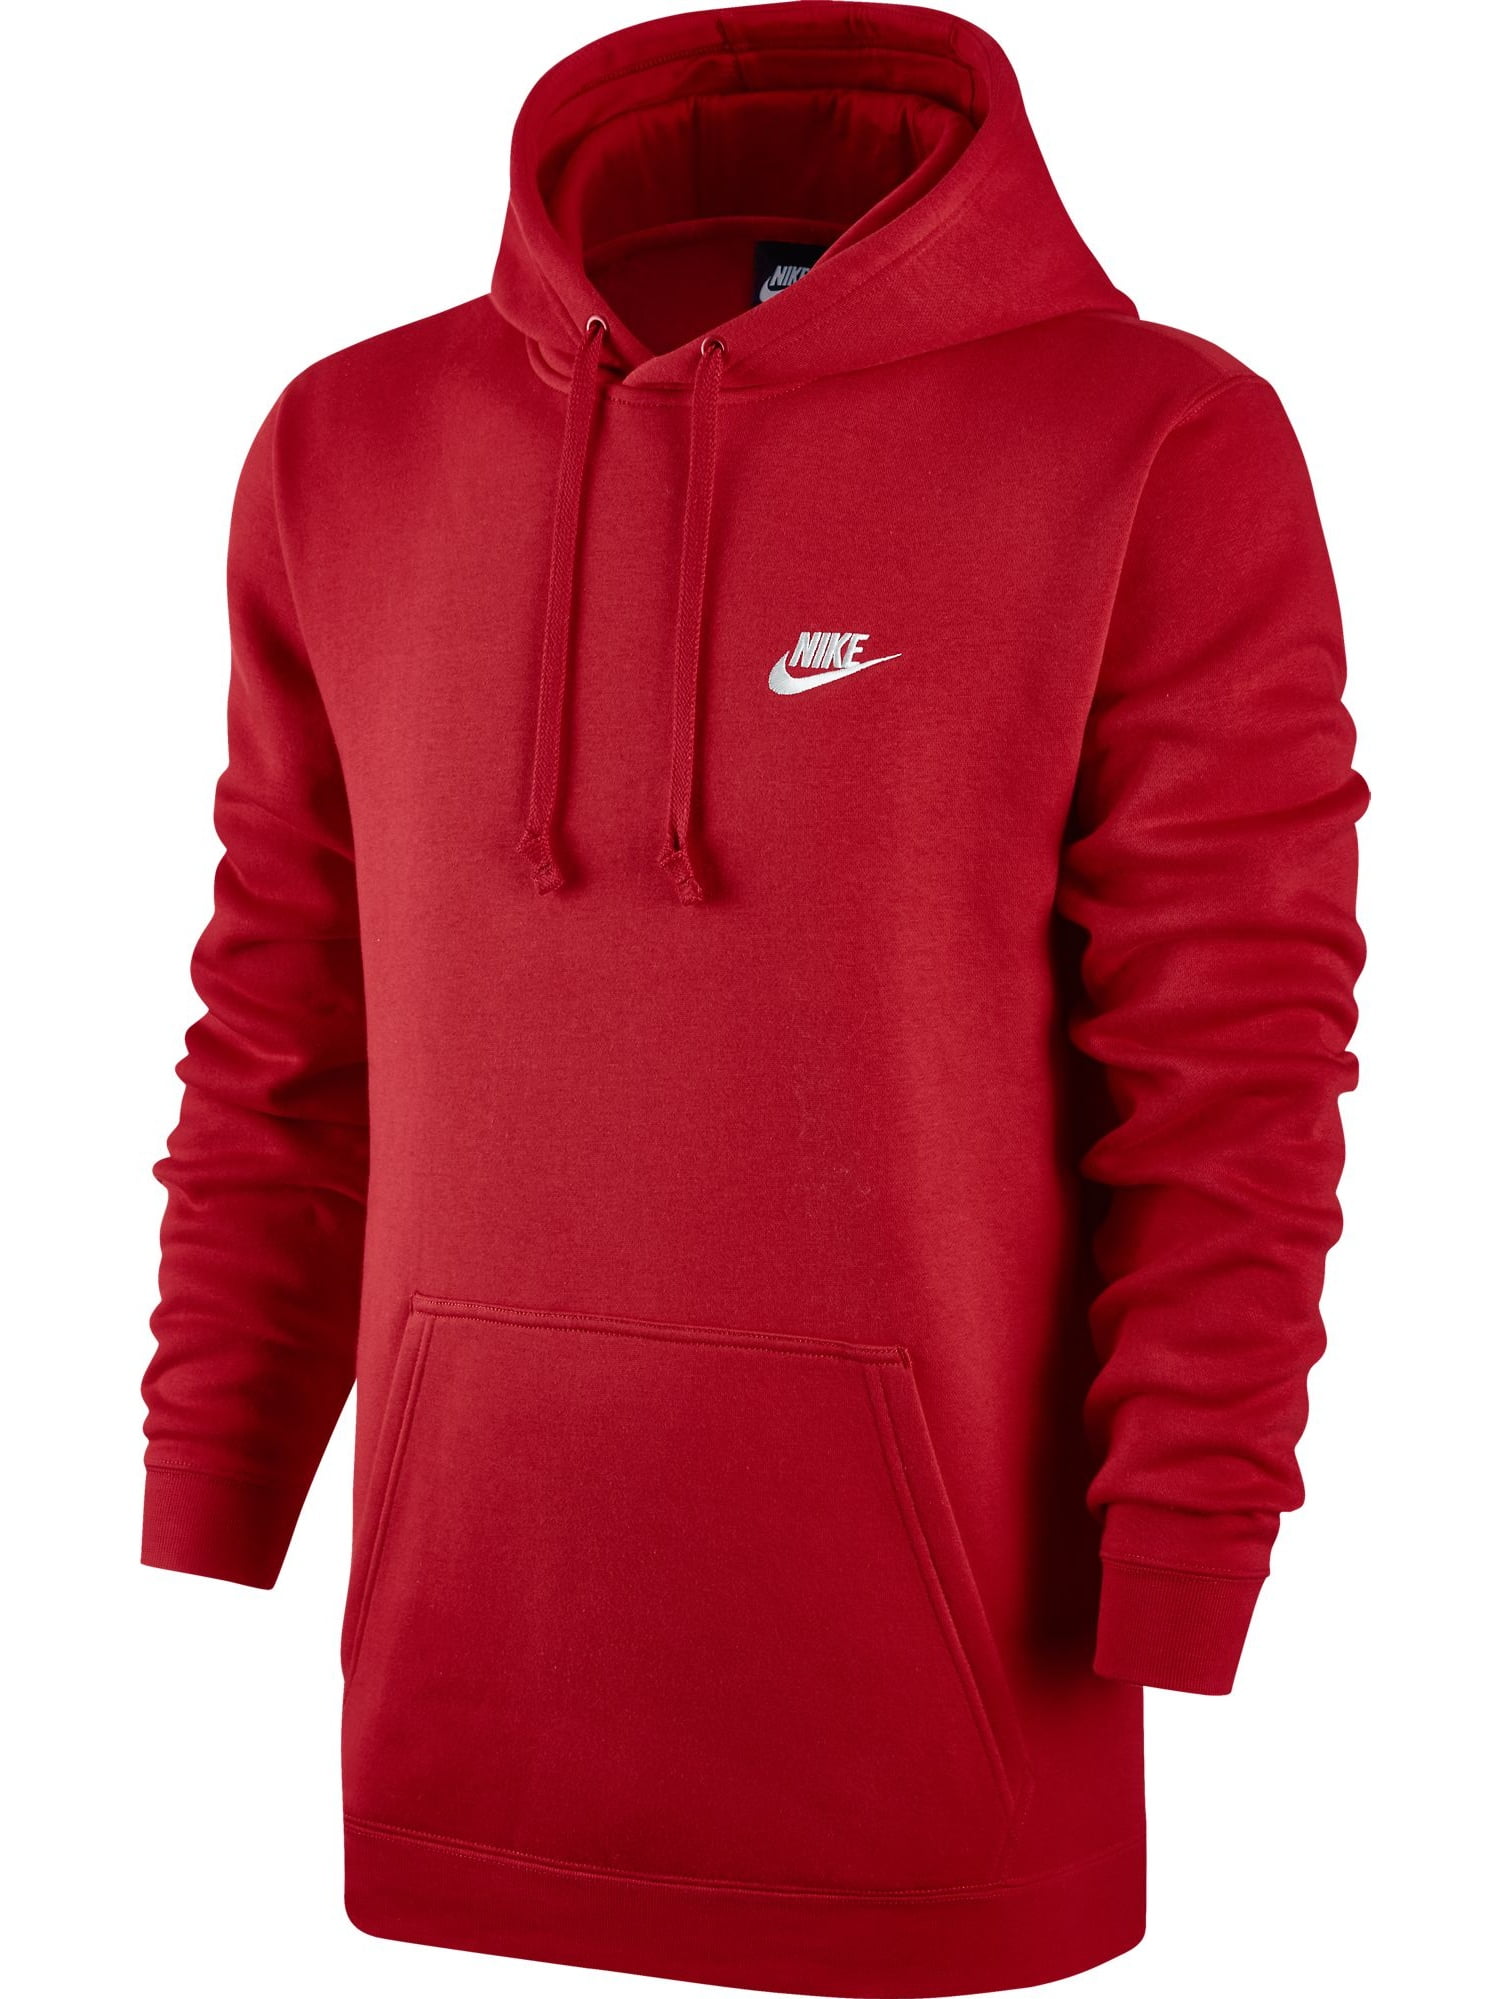 Nike Club Fleece Pullover Longsleeve Men's Hoodie Red/White 804346-657 ...